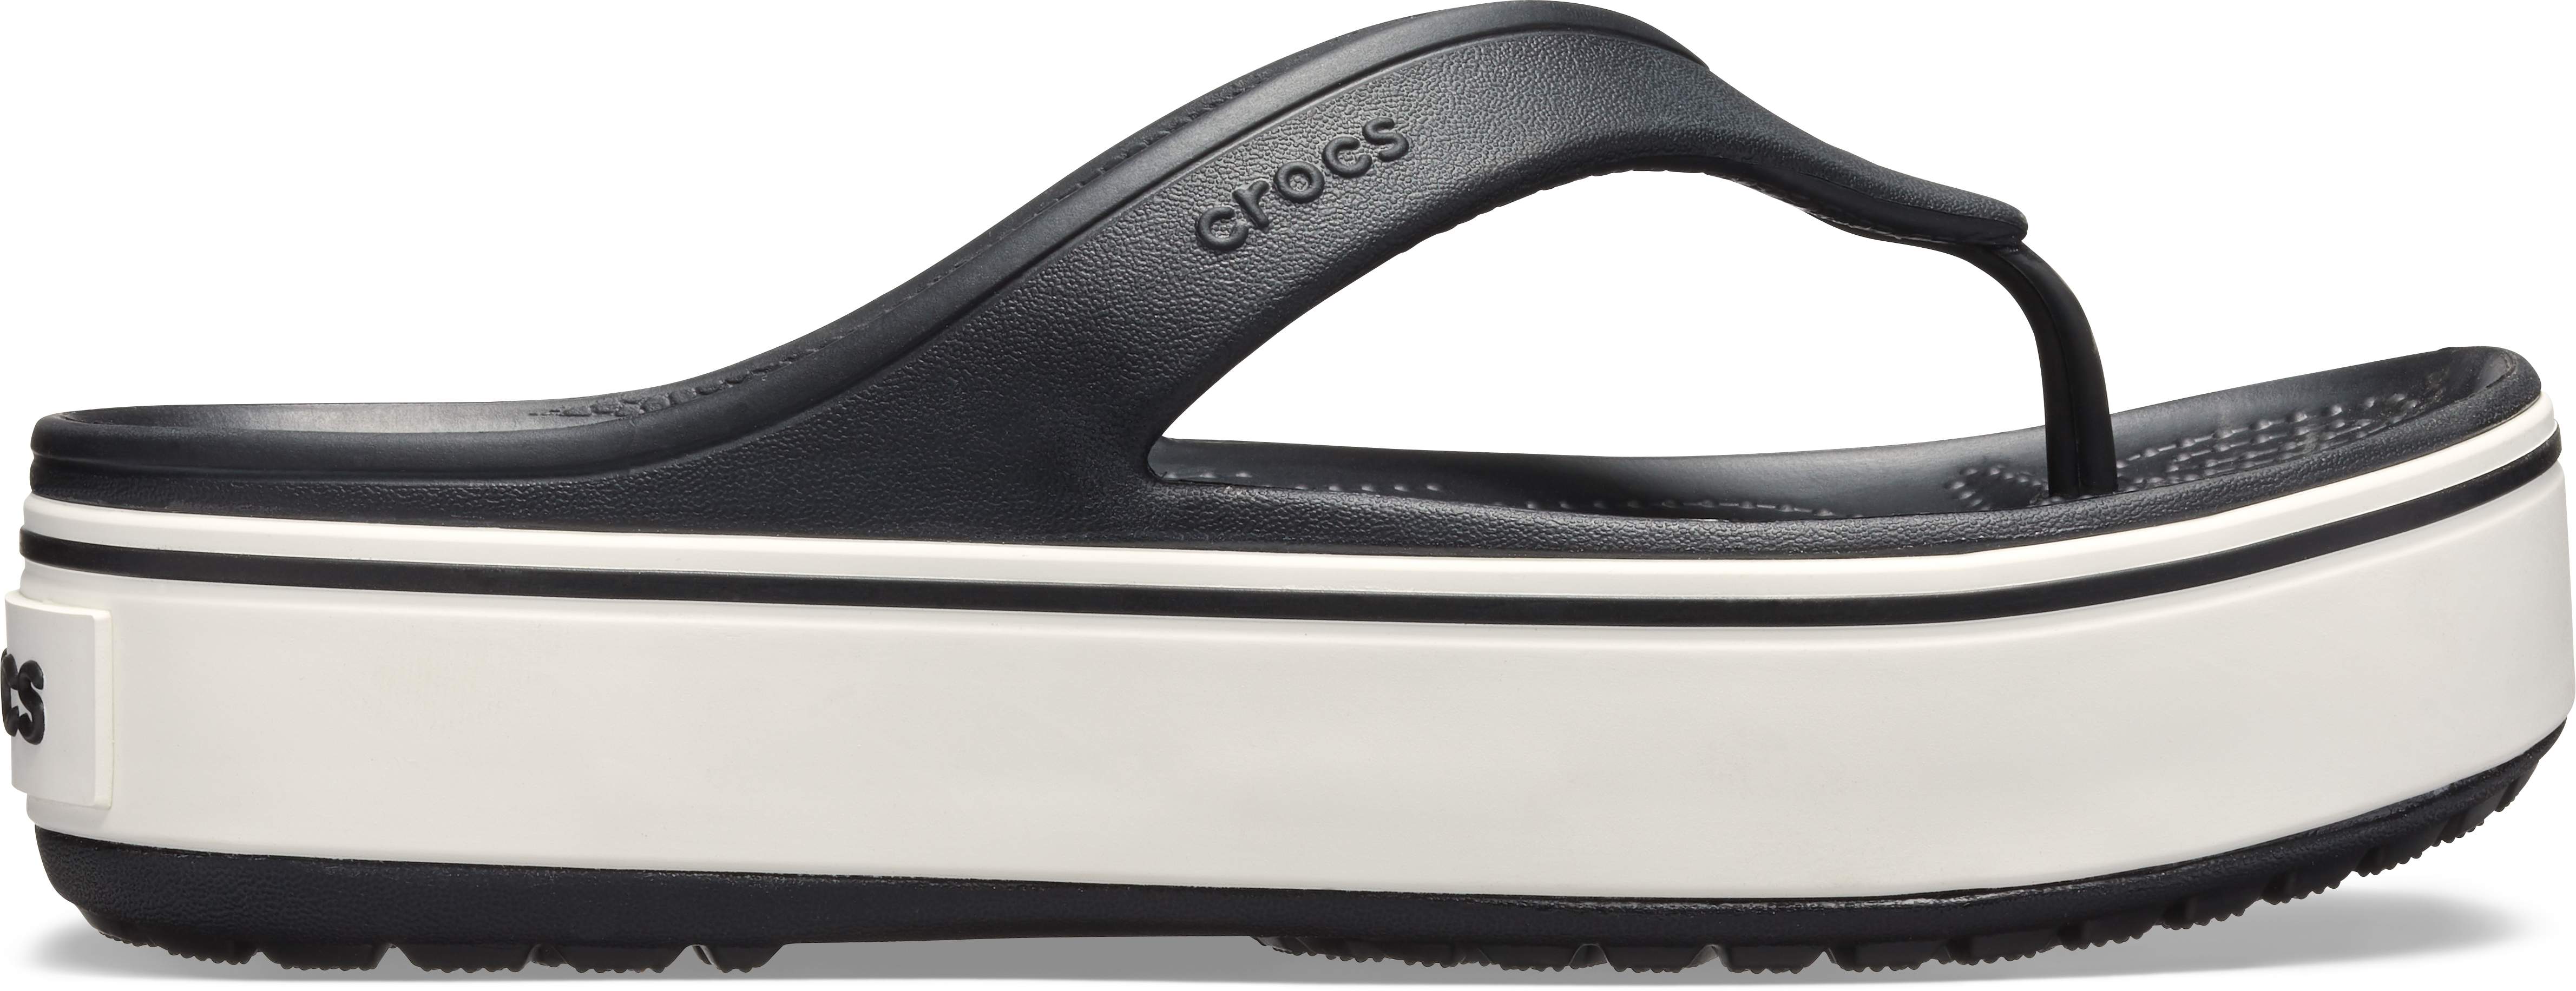 crocs crocband platform flip